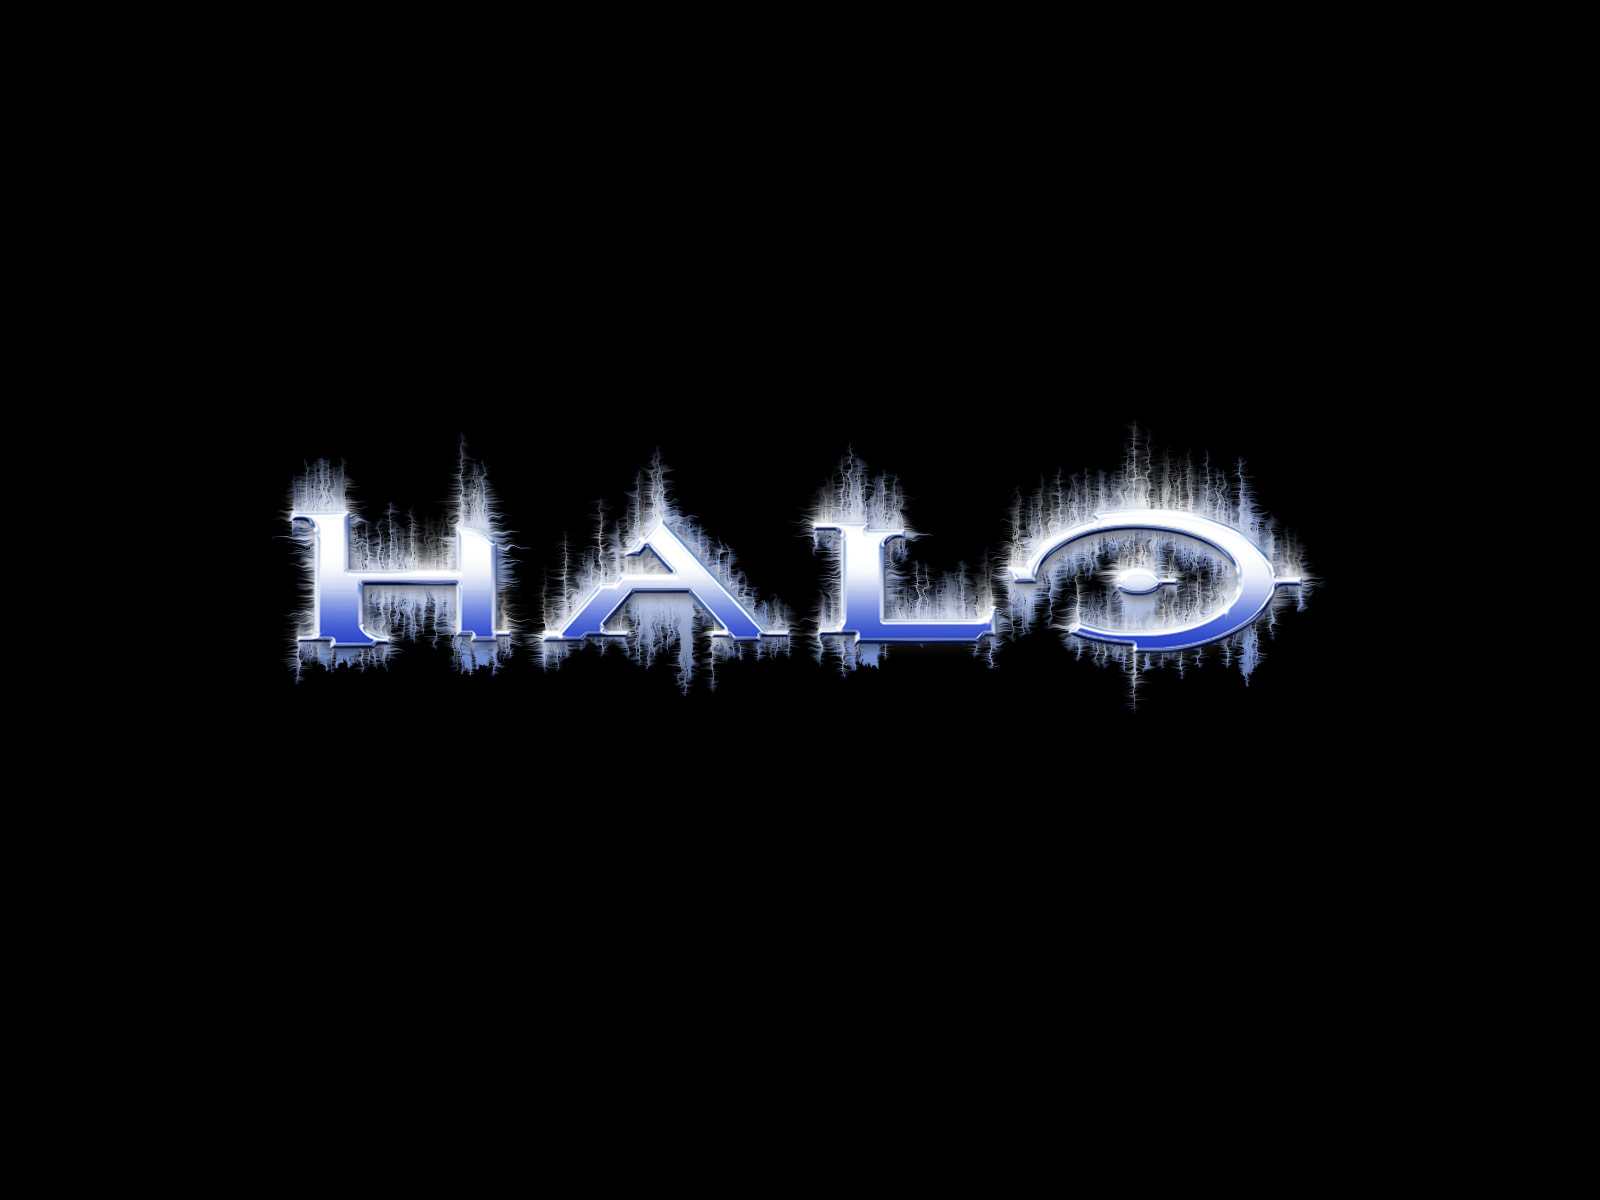 halo-Logo-Wallpaper.jpg